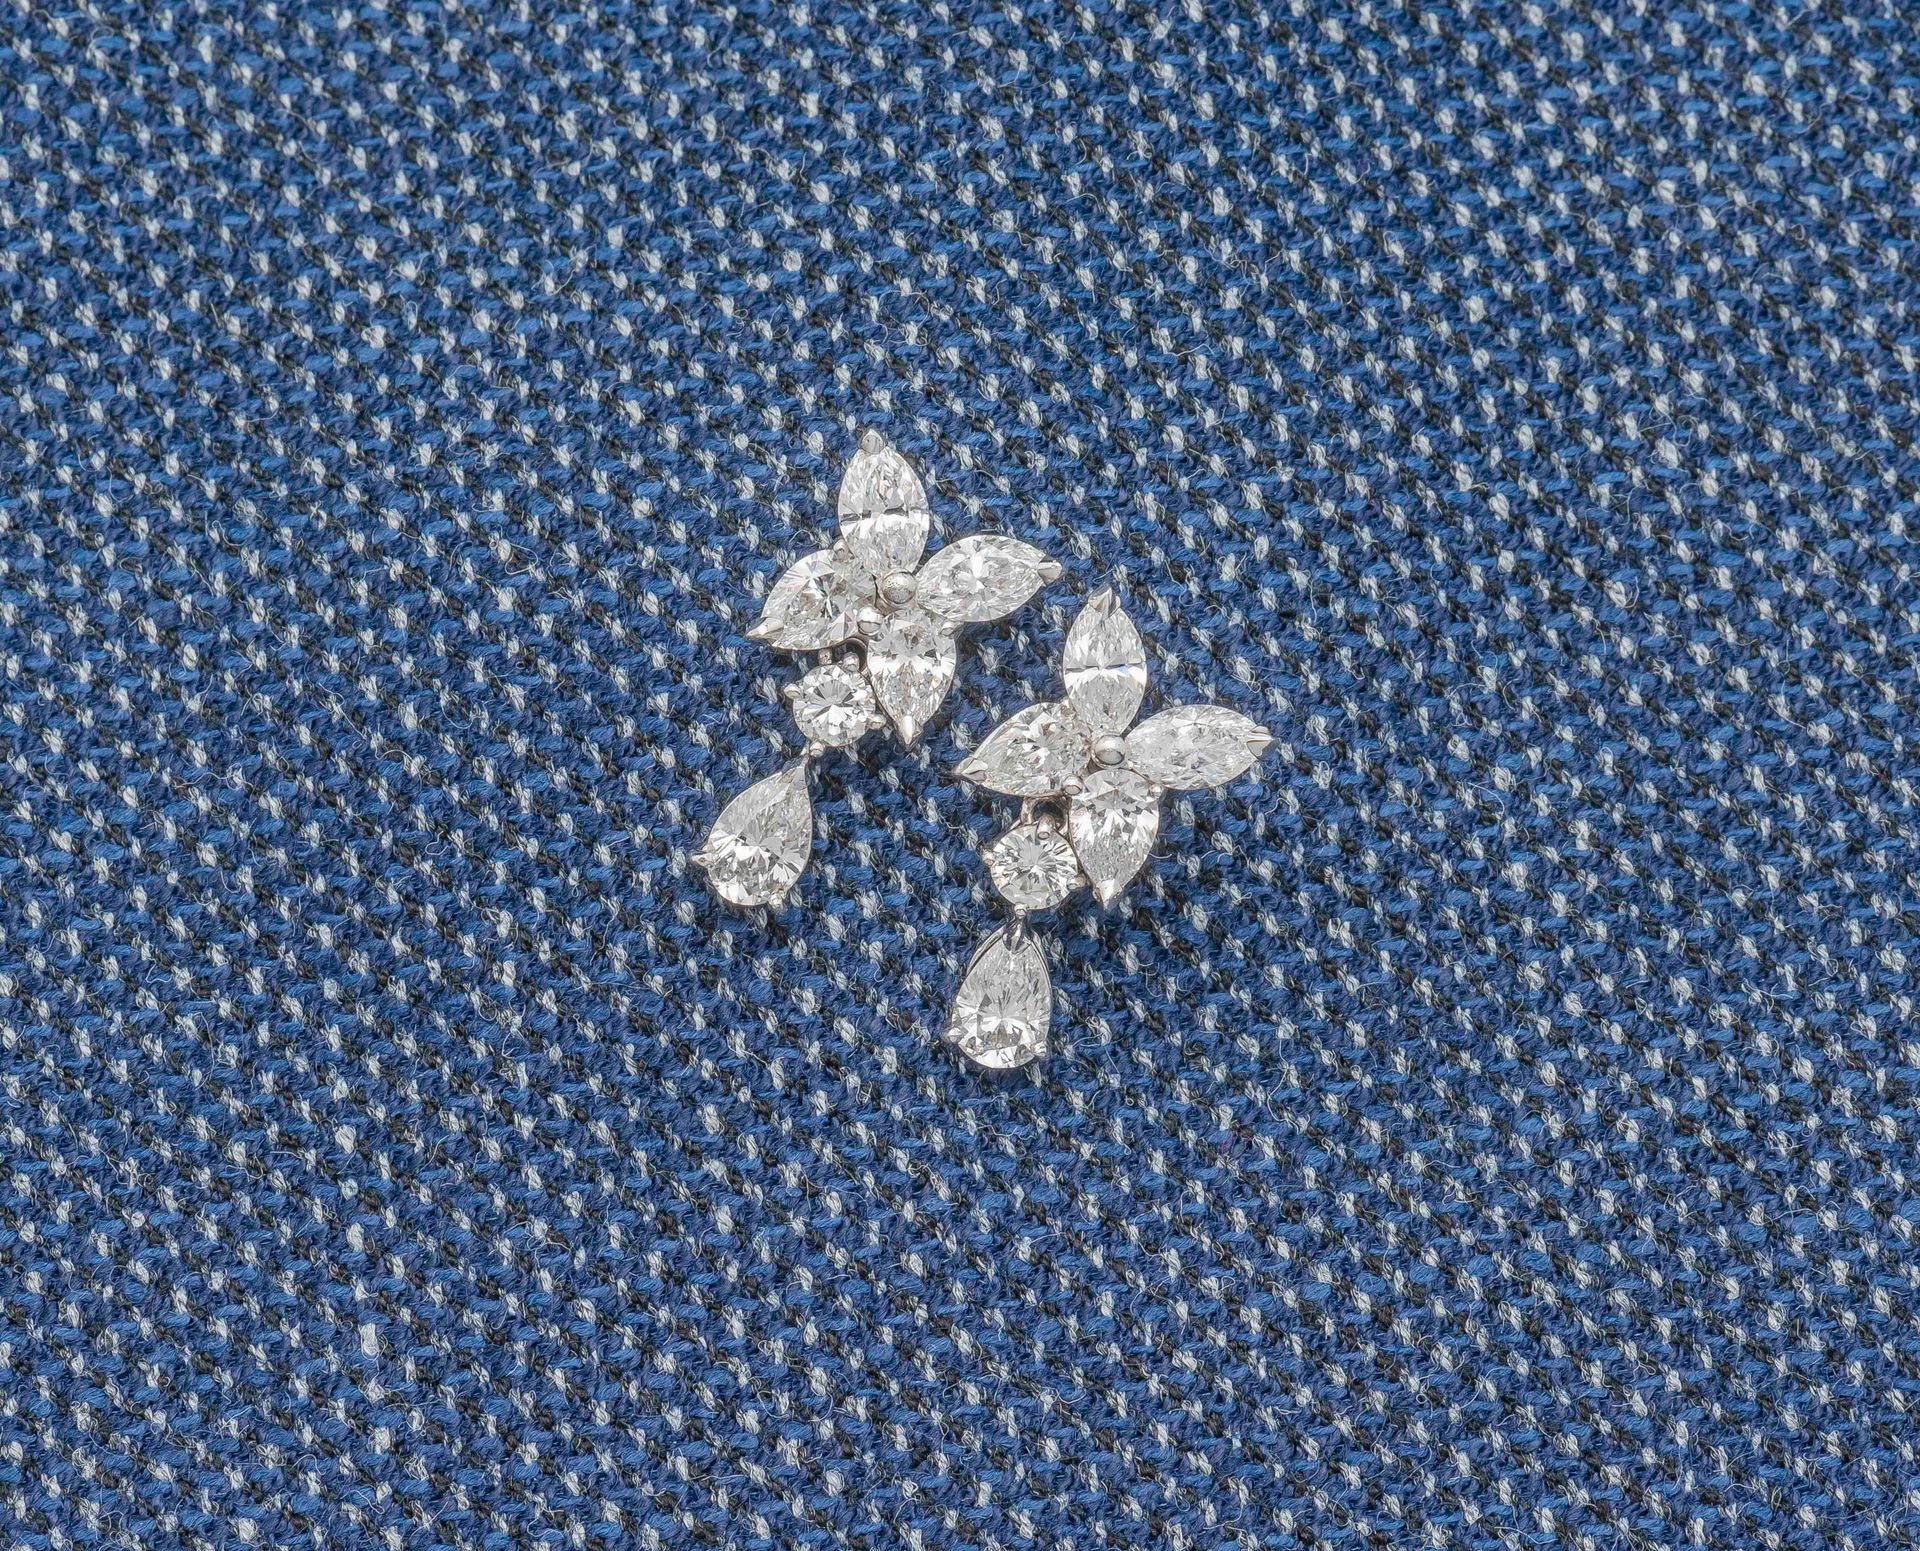 Null 一对18克拉（750‰）白金耳环，按钮上画着一只蝴蝶，由两颗脐带钻石和两颗梨形切割钻石组成，共重1克拉，流苏上有一颗圆钻和一颗梨形切割钻石，约重0.4&hellip;